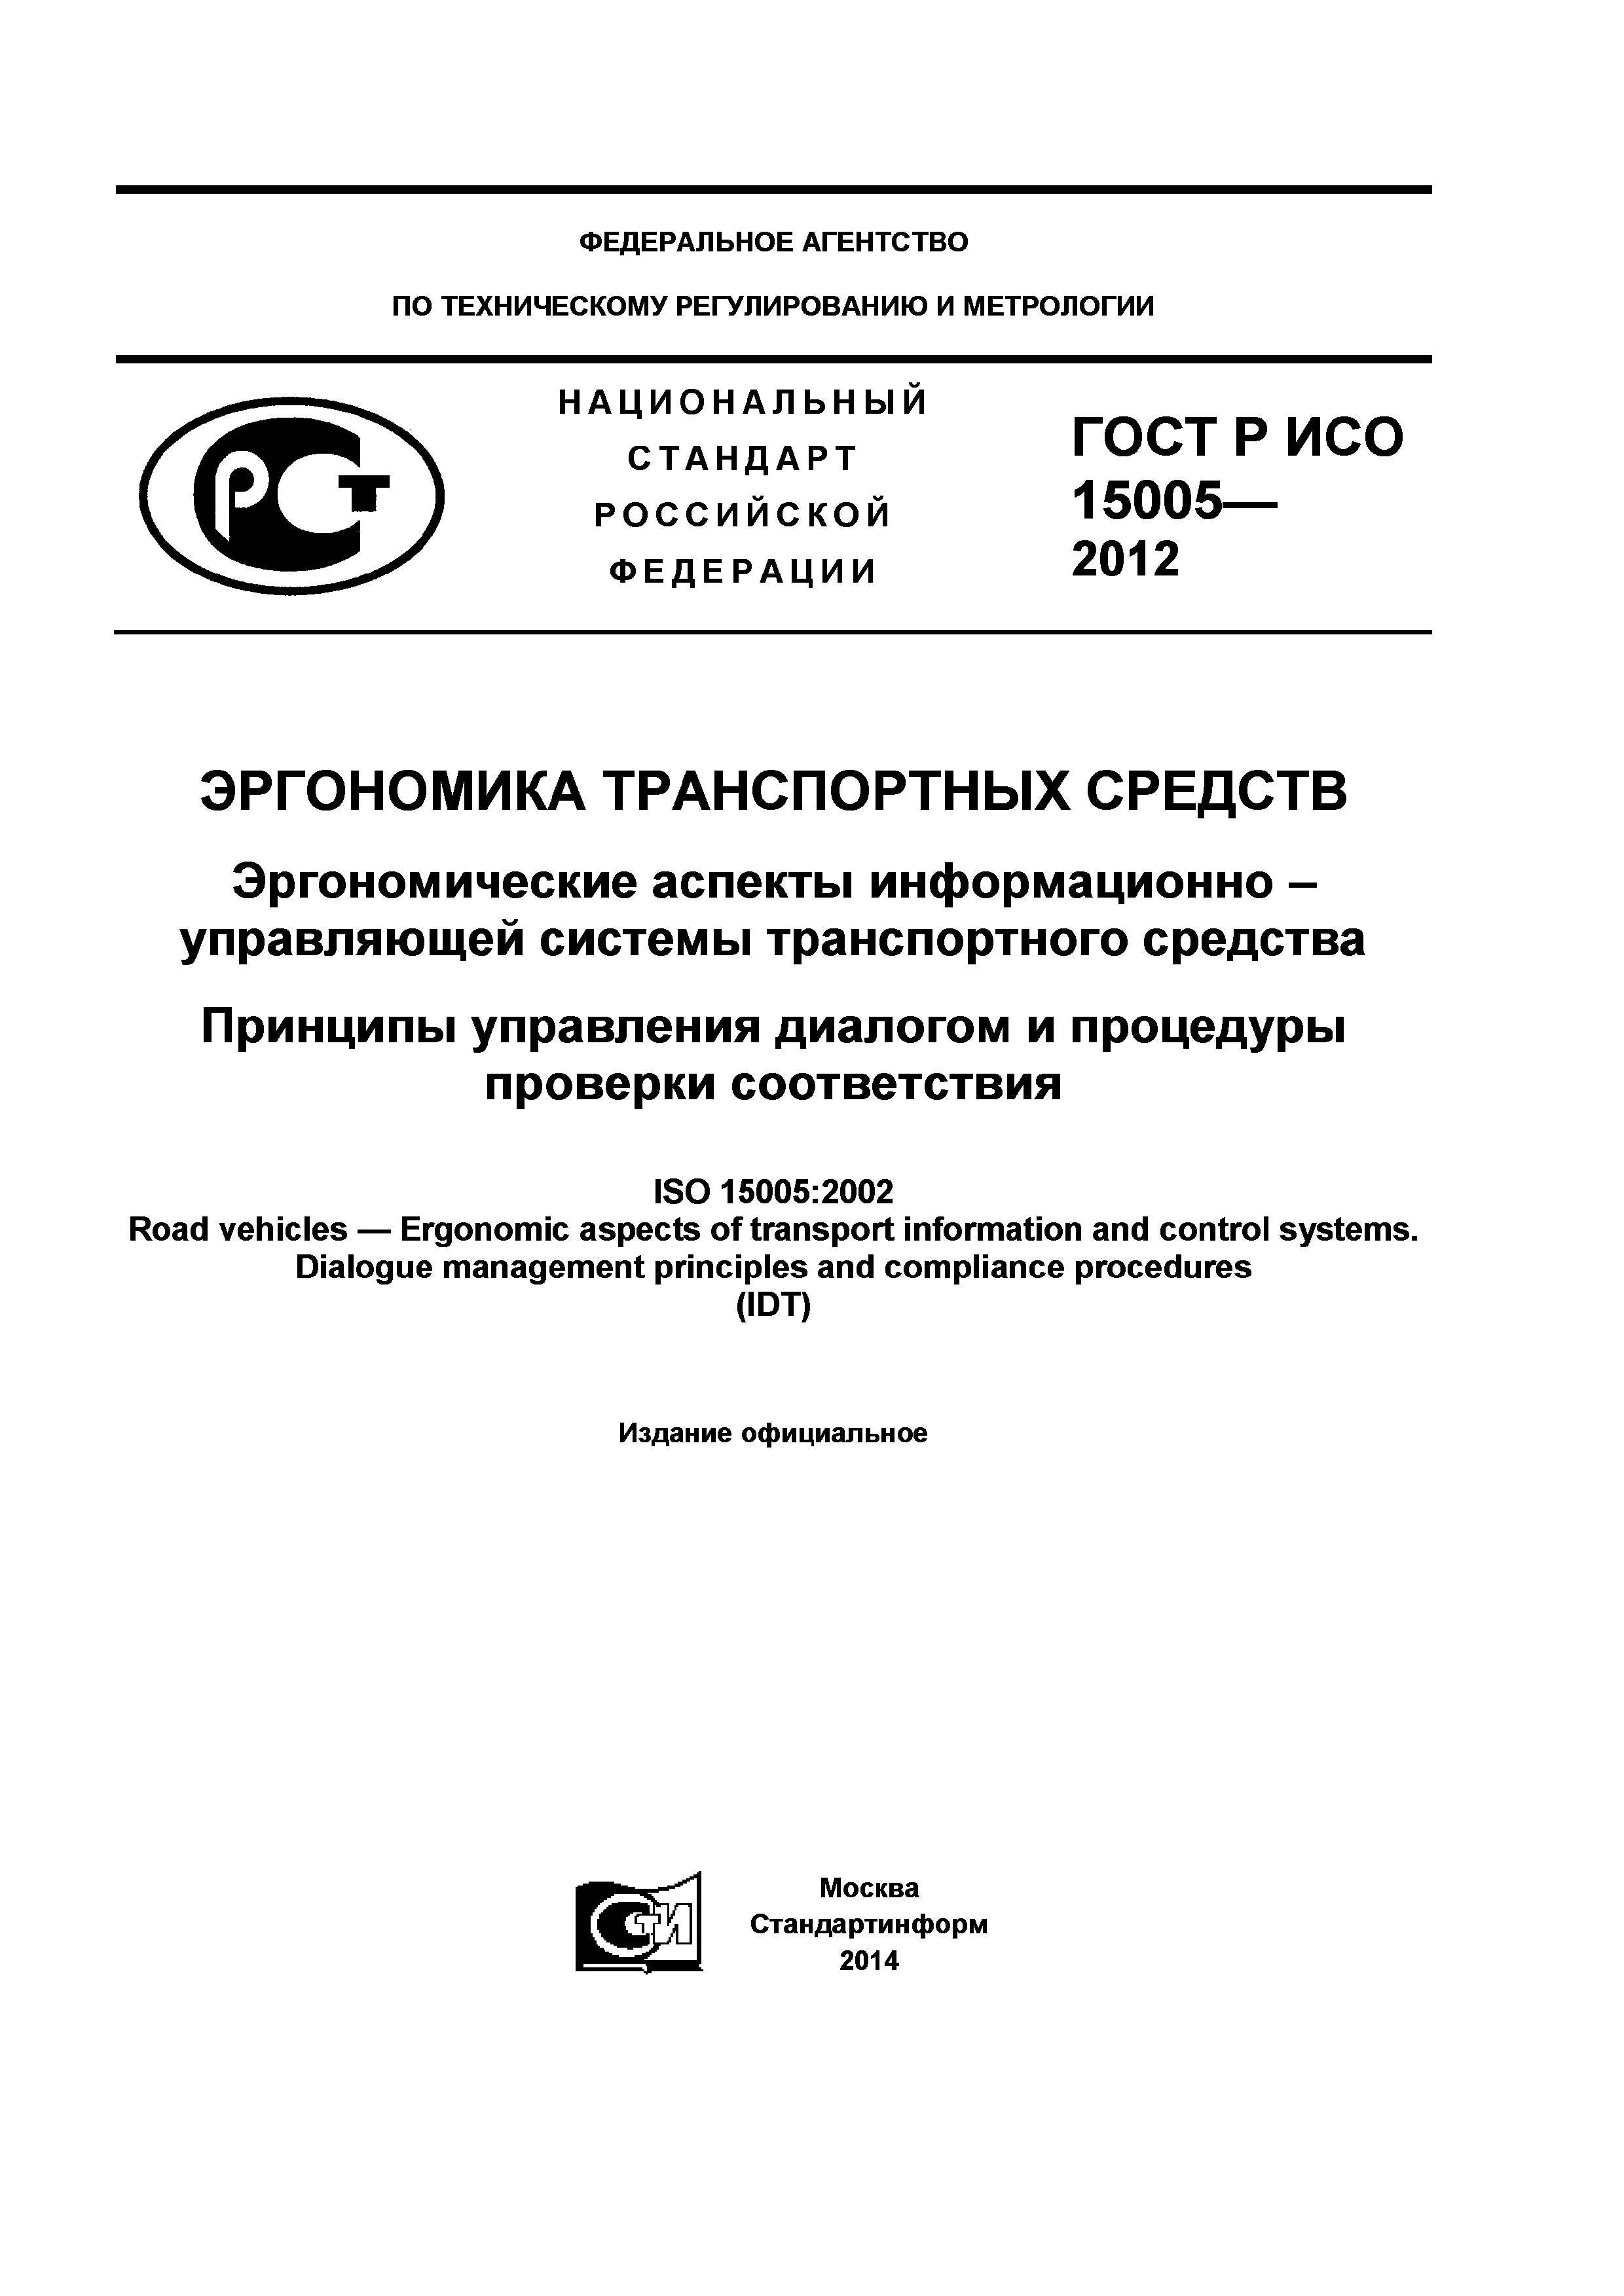 ГОСТ Р ИСО 15005-2012